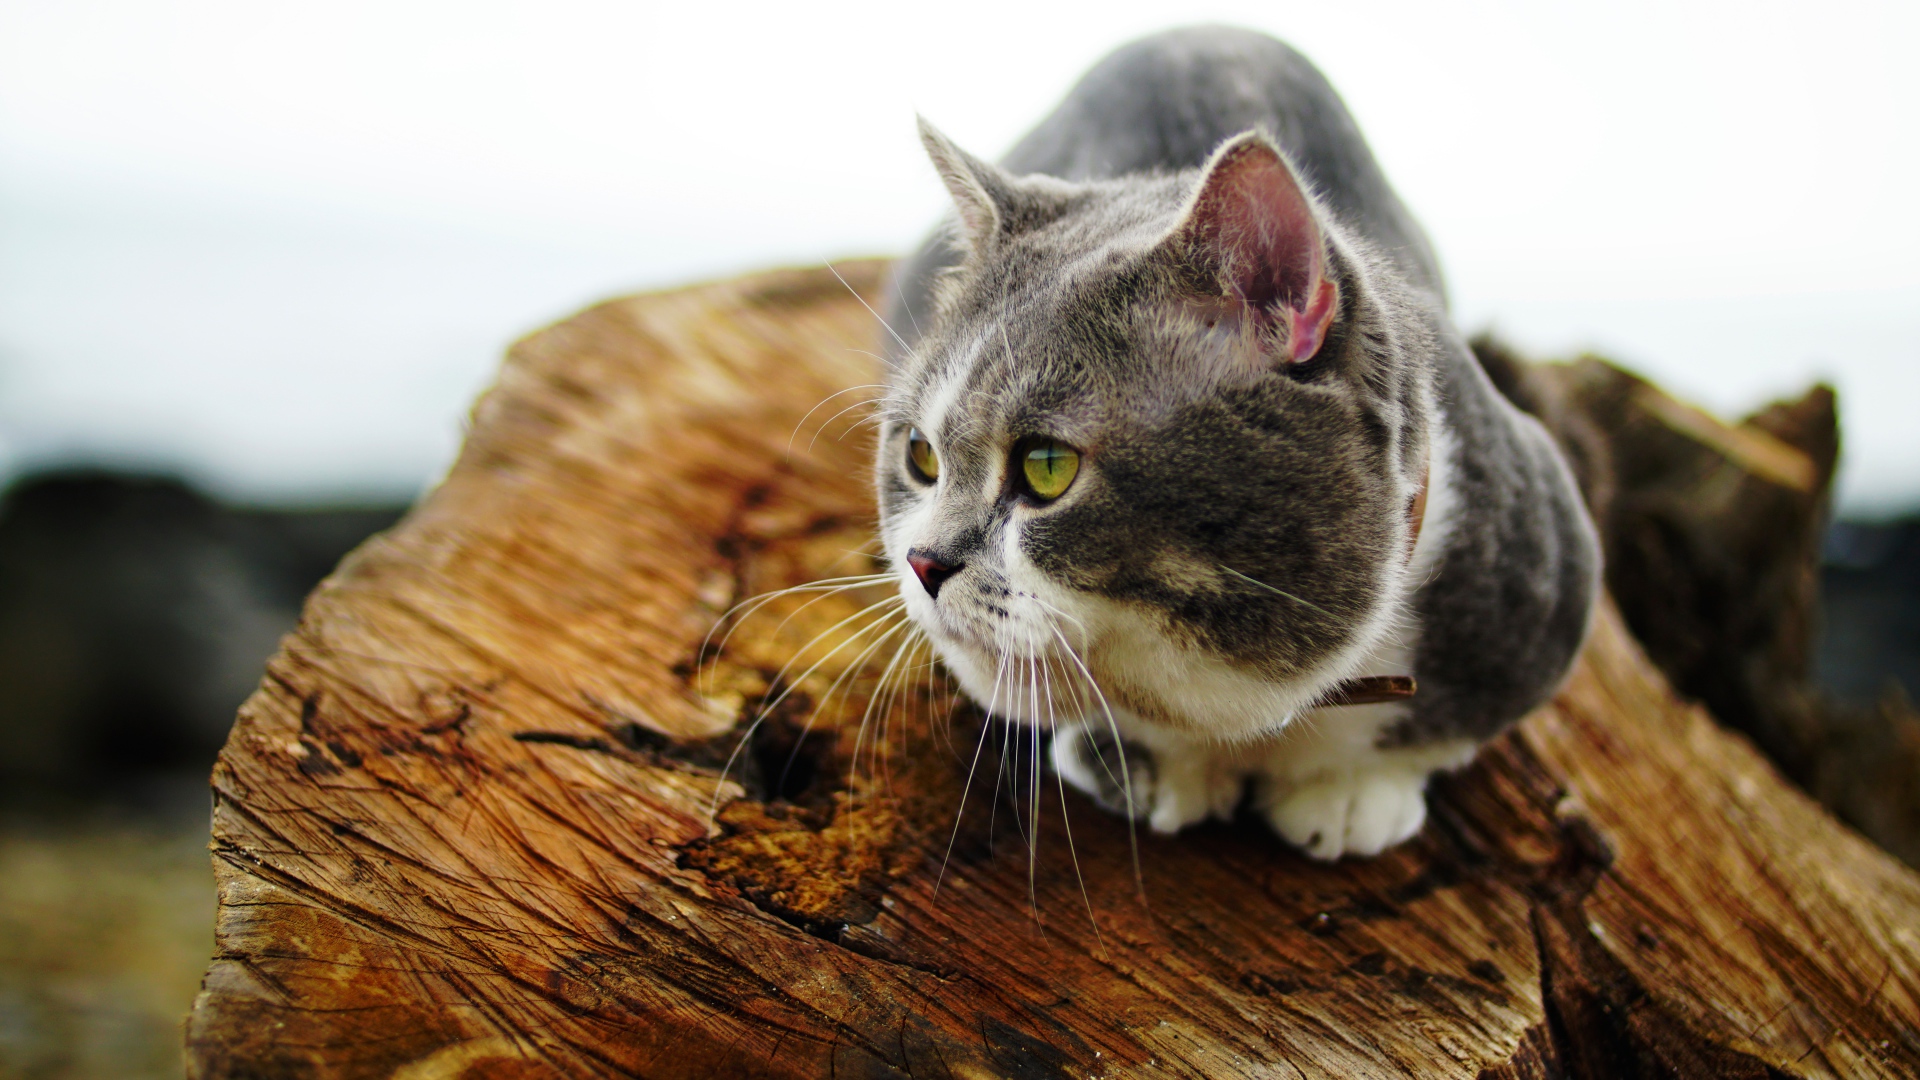 Породистый зеленоглазый кот сидит на сухом дереве